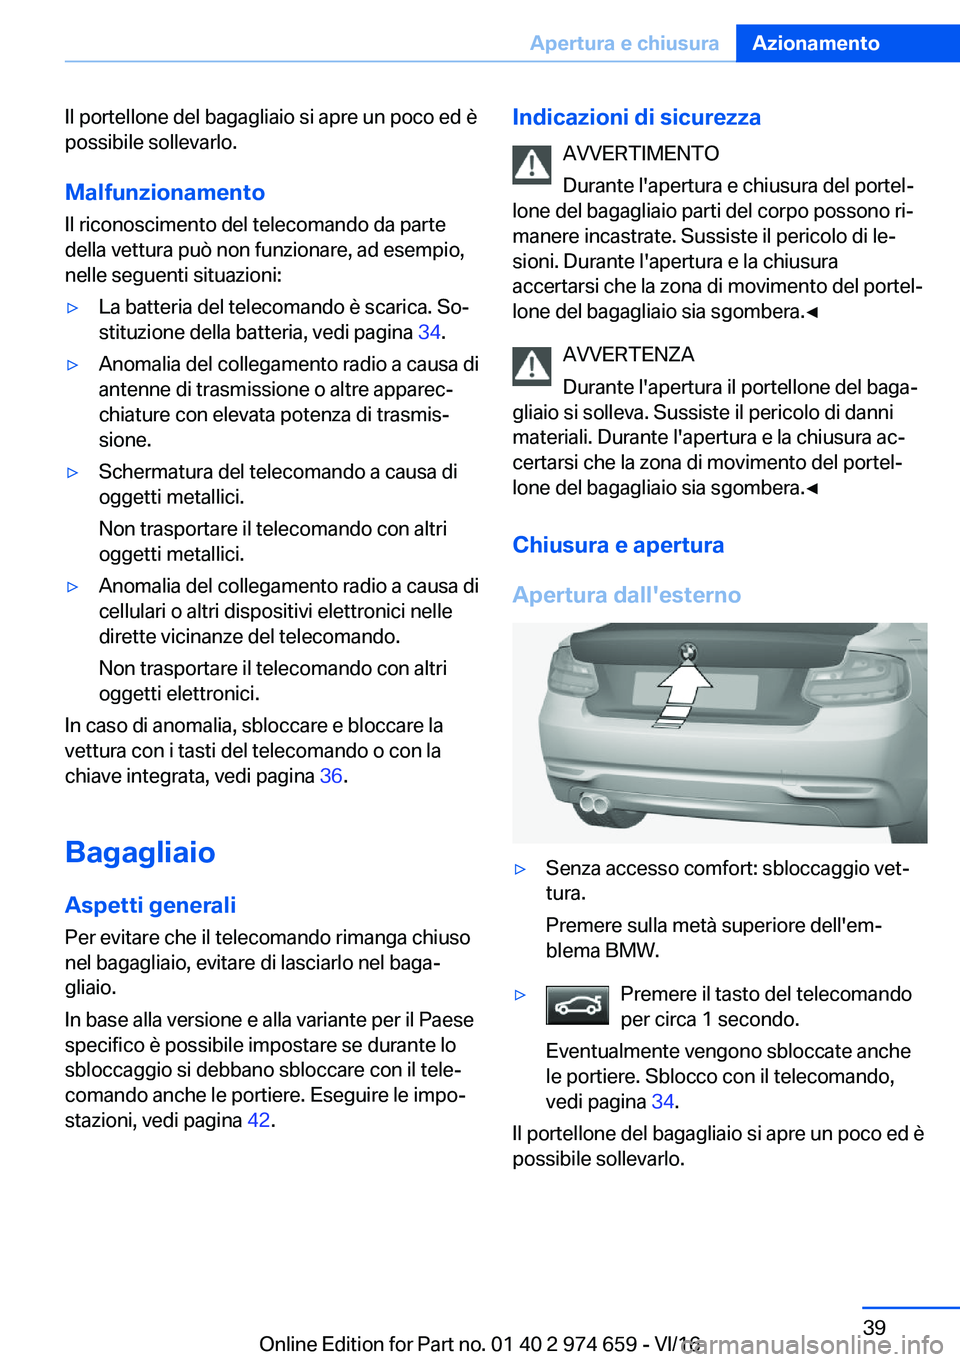 BMW M2 2017  Libretti Di Uso E manutenzione (in Italian) �I�l� �p�o�r�t�e�l�l�o�n�e� �d�e�l� �b�a�g�a�g�l�i�a�i�o� �s�i� �a�p�r�e� �u�n� �p�o�c�o� �e�d� �è�p�o�s�s�i�b�i�l�e� �s�o�l�l�e�v�a�r�l�o�.
�M�a�l�f�u�n�z�i�o�n�a�m�e�n�t�o �I�l� �r�i�c�o�n�o�s�c�i�